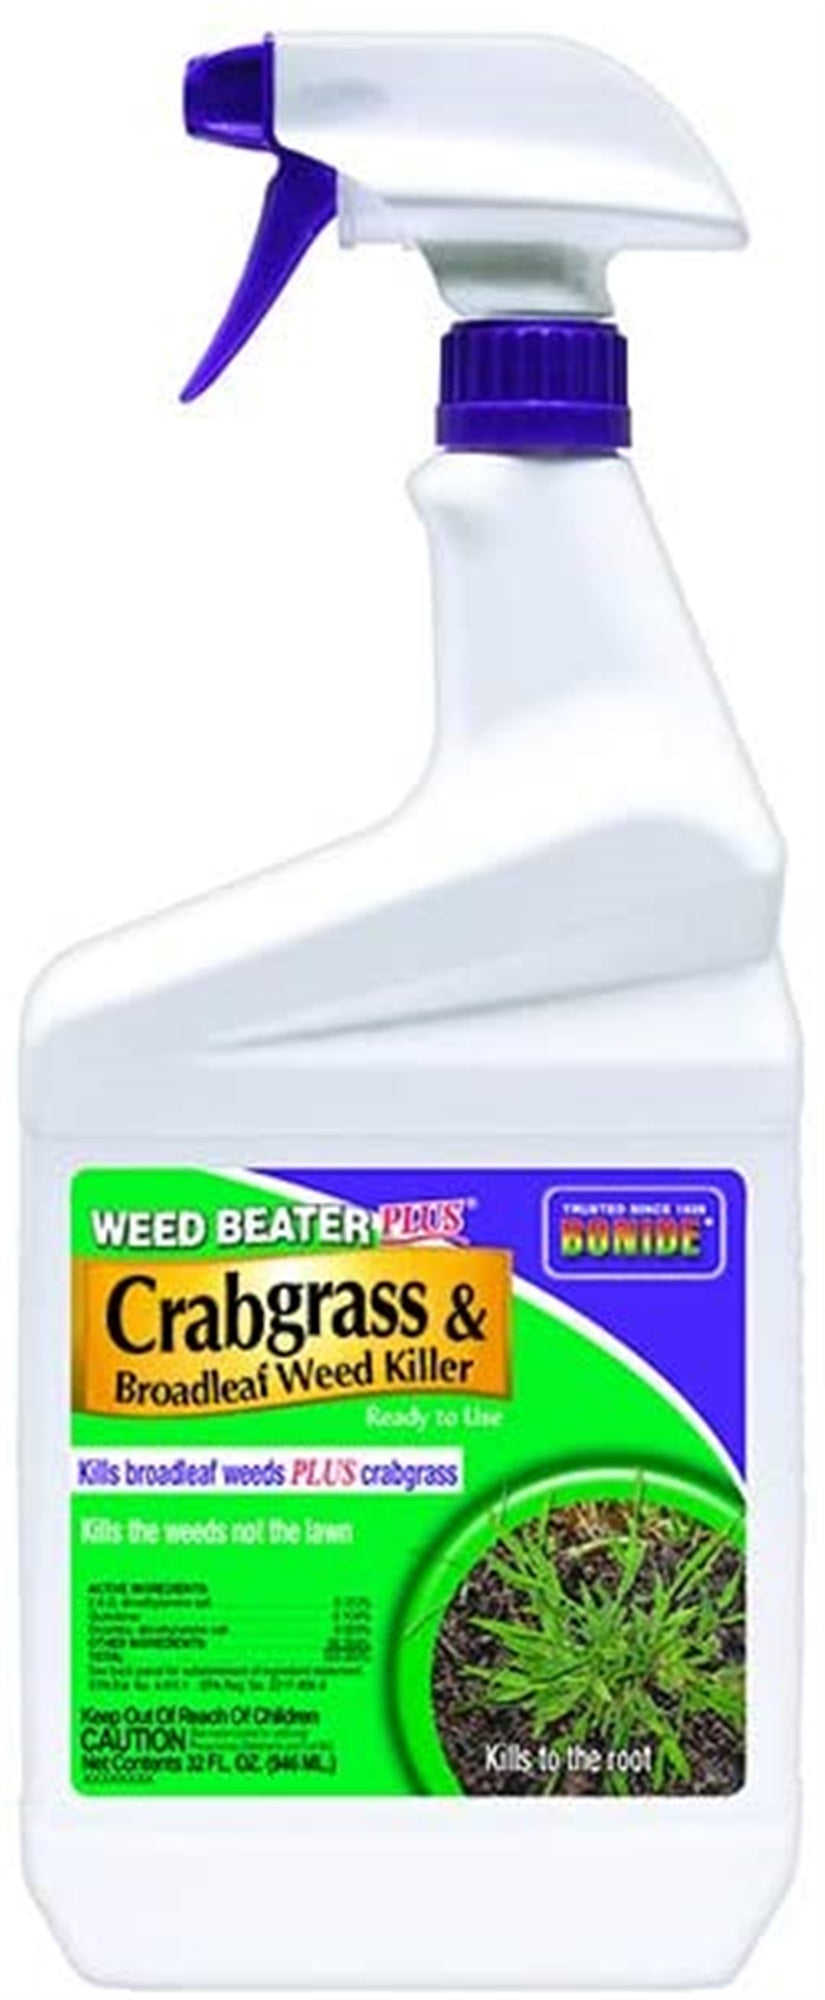 Bonide Weed Beater Plus Crabgrass & Broadleaf Weed Killer, RTU, 32oz